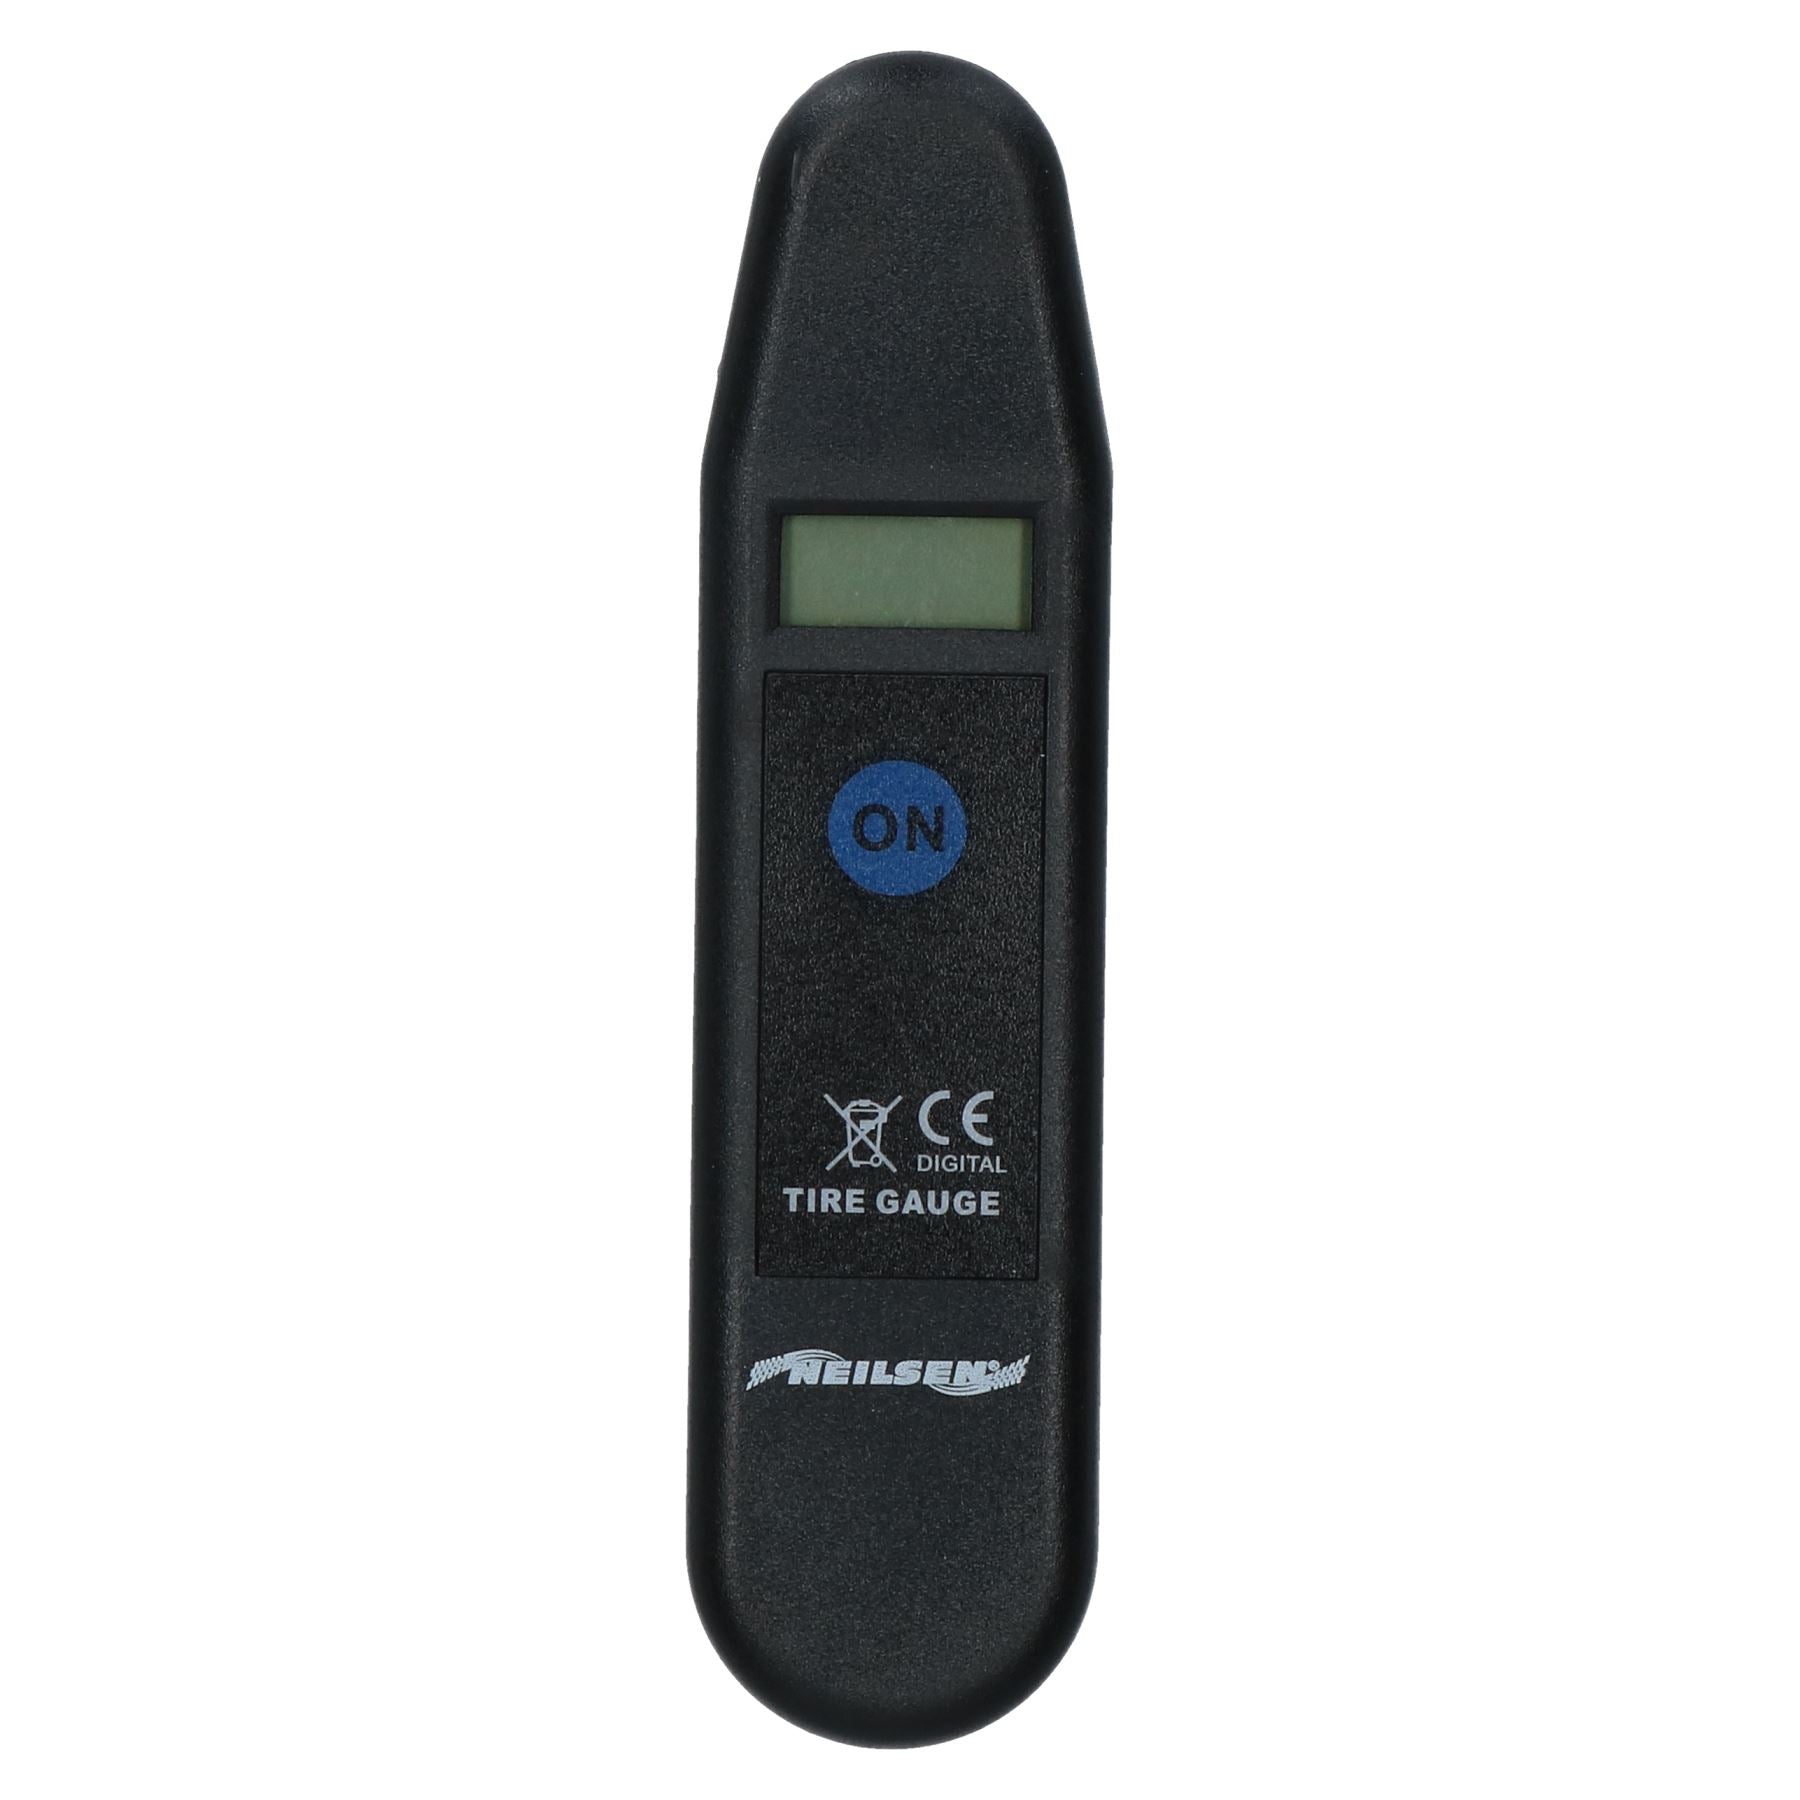 Digital Handheld Tyre Pressure Gauge for Measuring Tyre Wheel Air 0 - 150psi